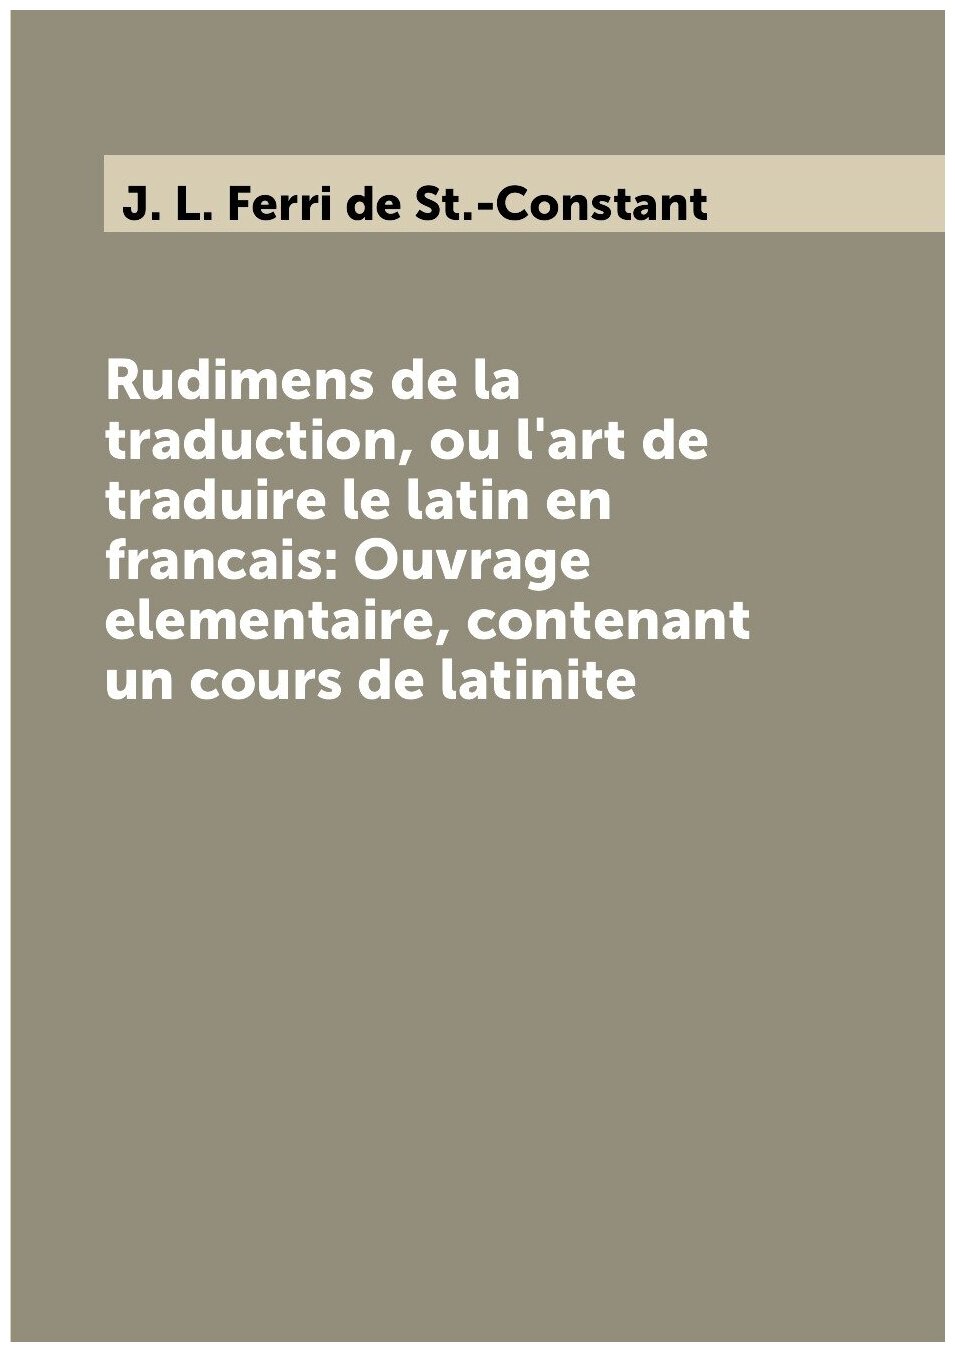 Rudimens de la traduction, ou l'art de traduire le latin en francais: Ouvrage elementaire, contenant un cours de latinite